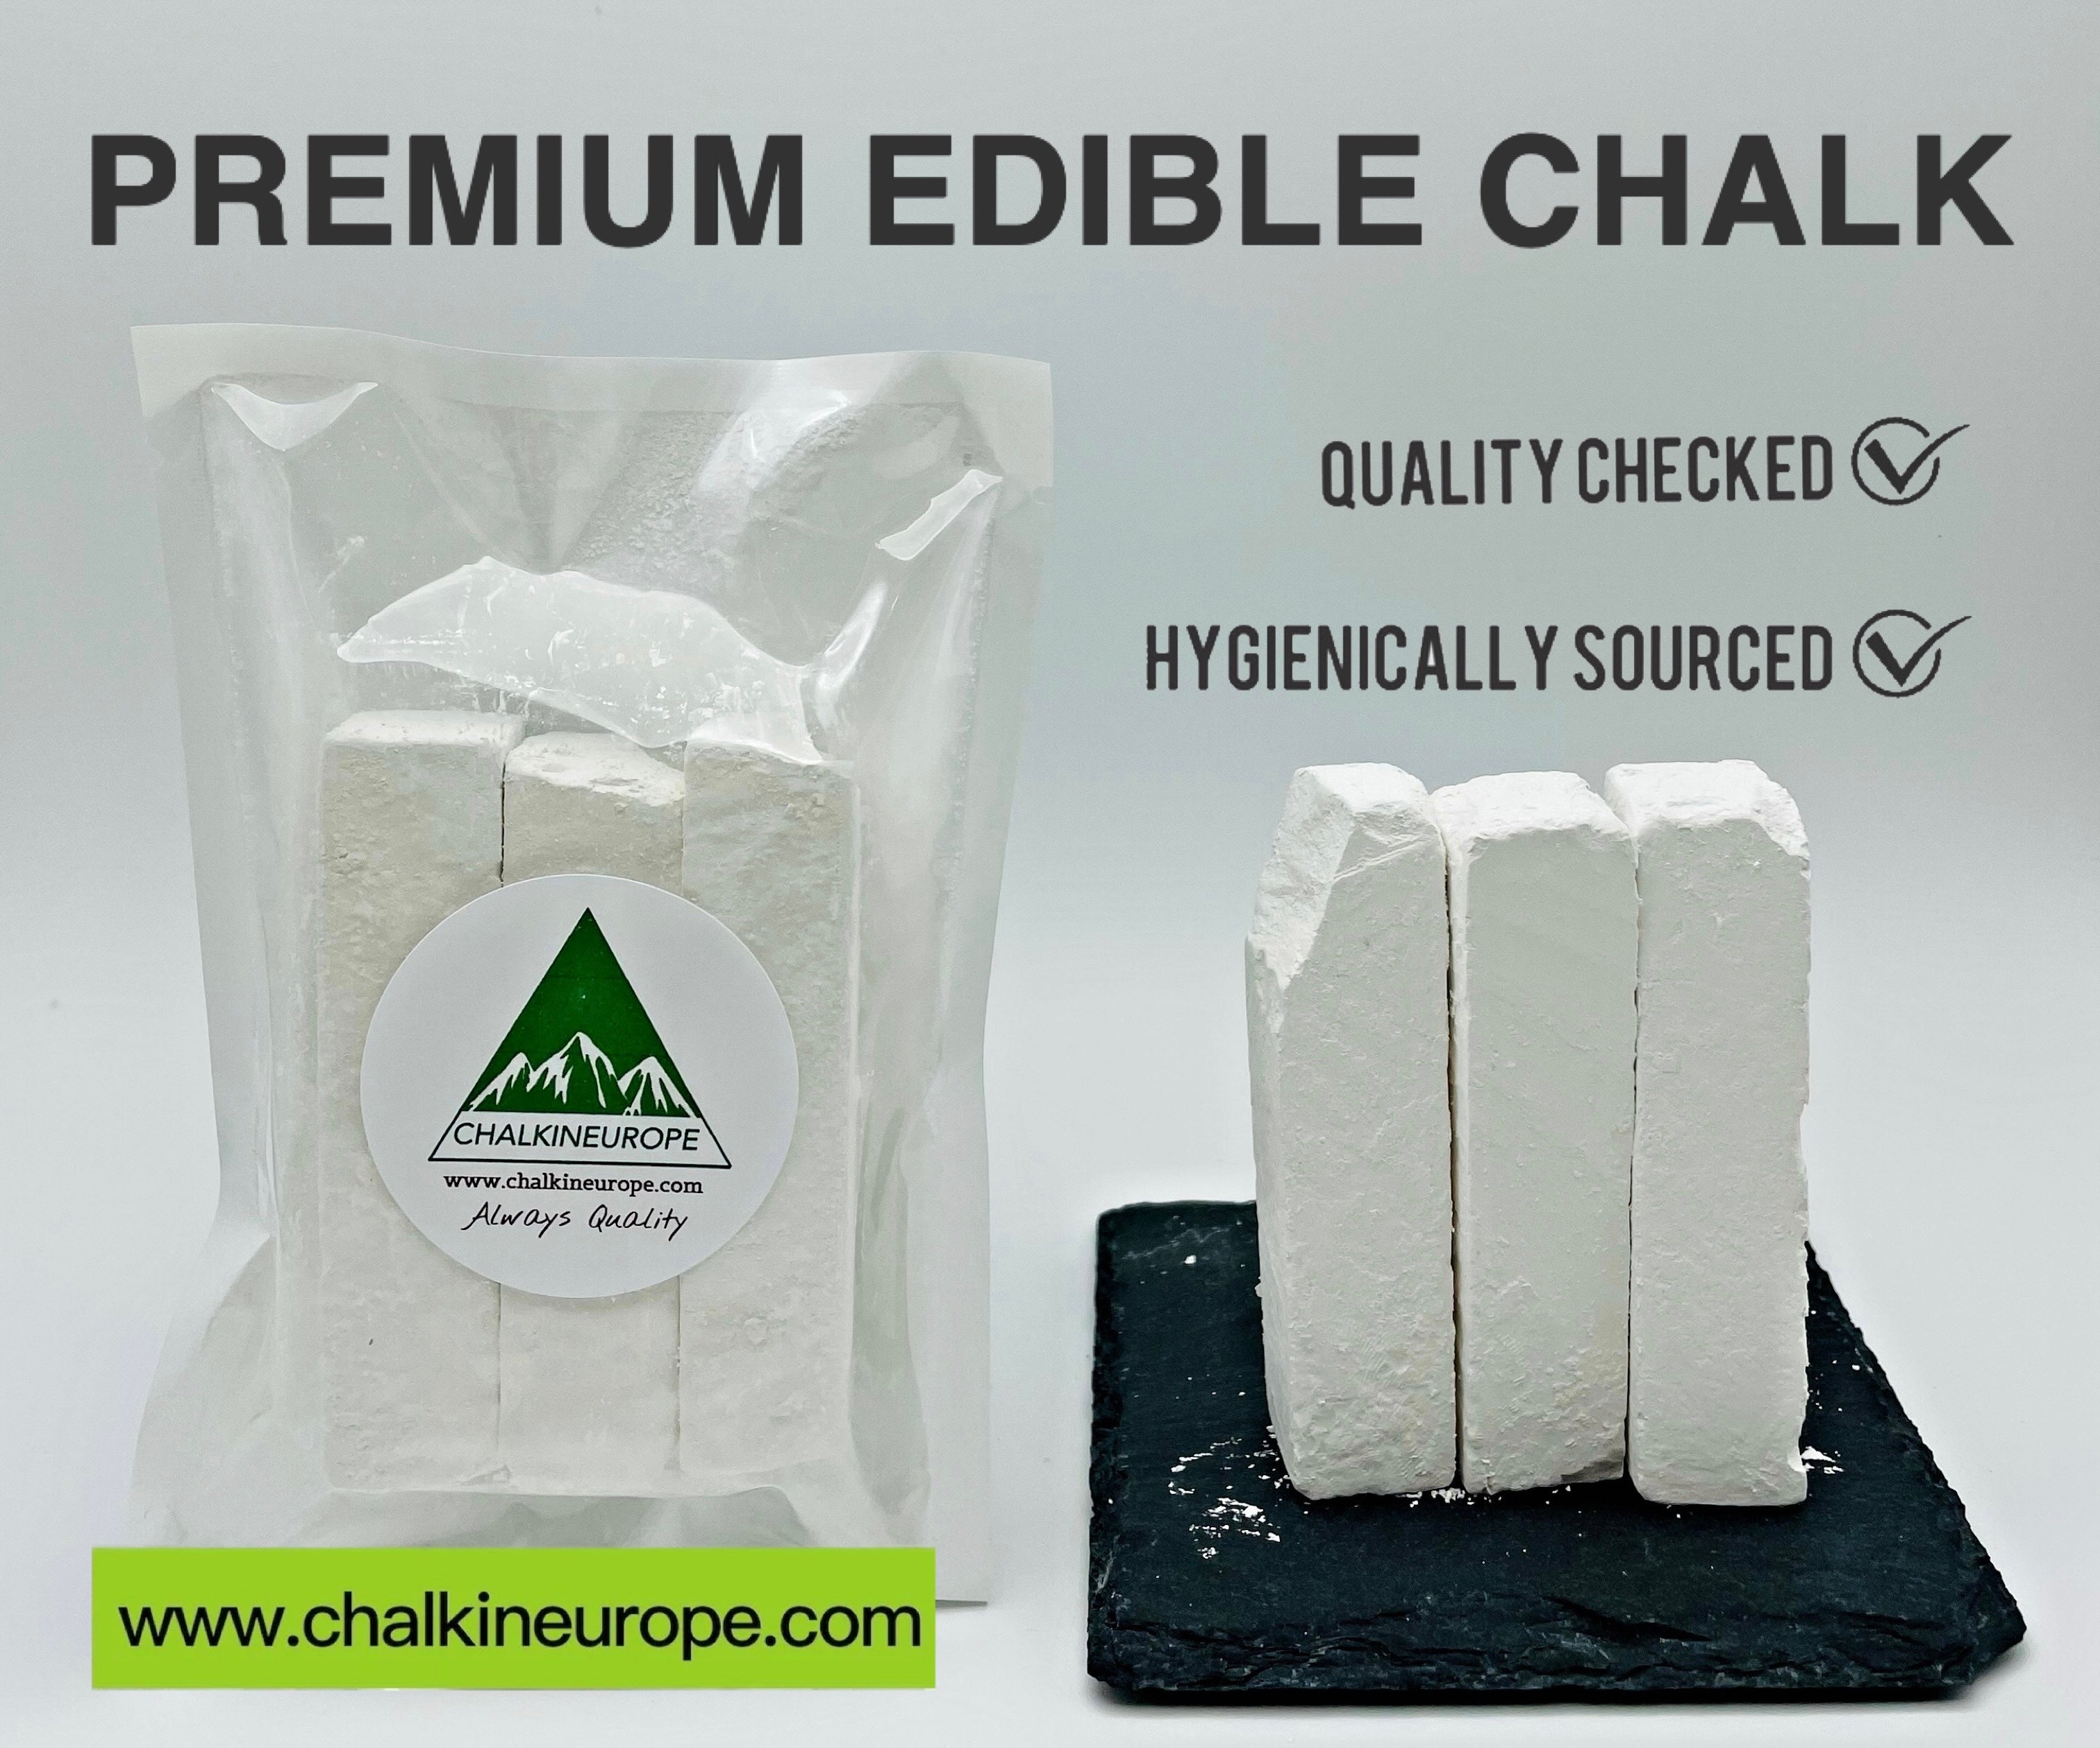 Premium Edible Chalk - Chalkineurope